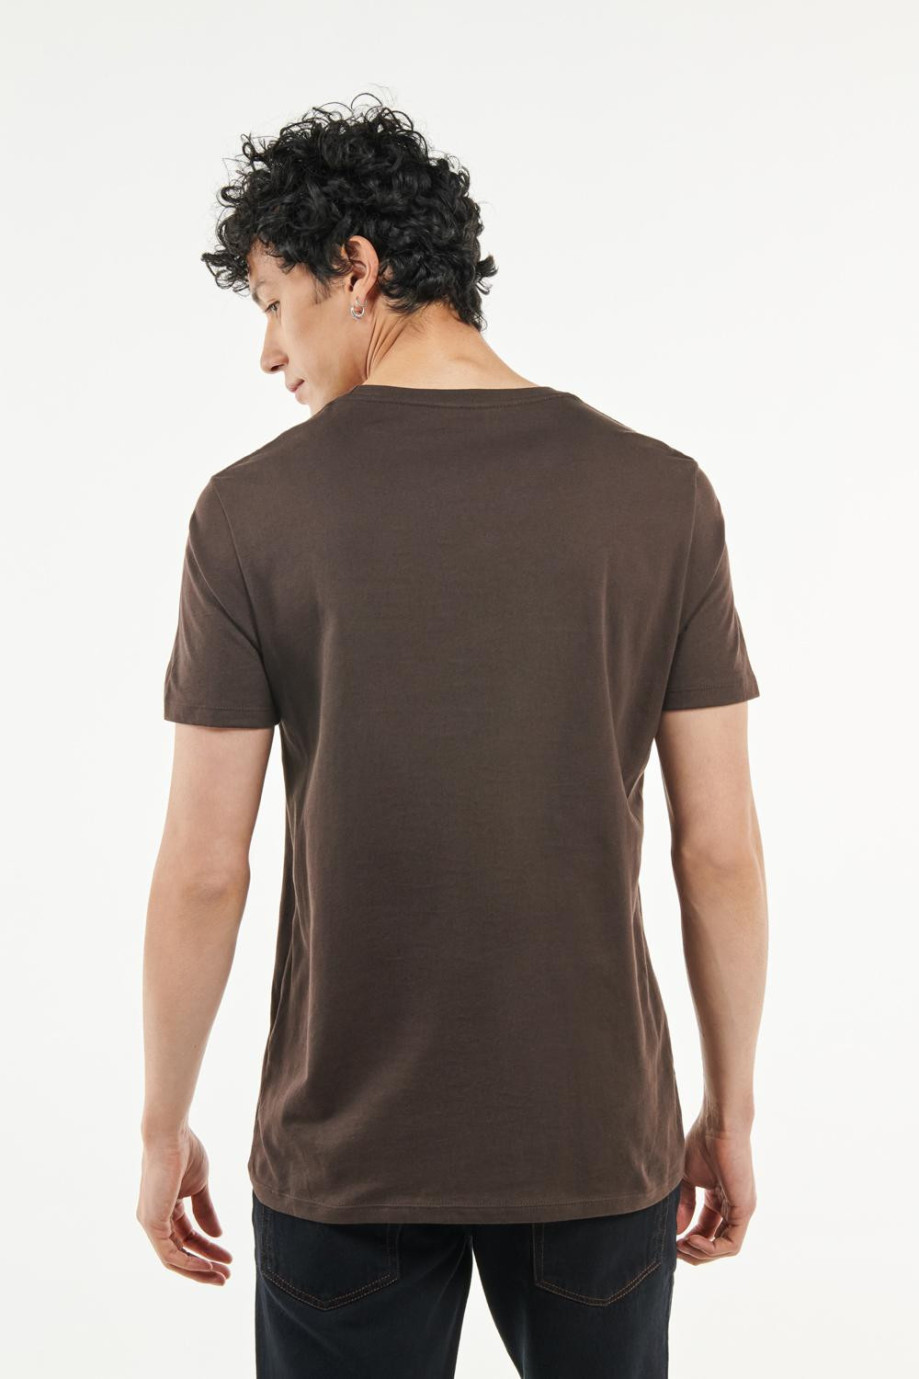 Camiseta café oscura cuello redondo con diseño college de Boston